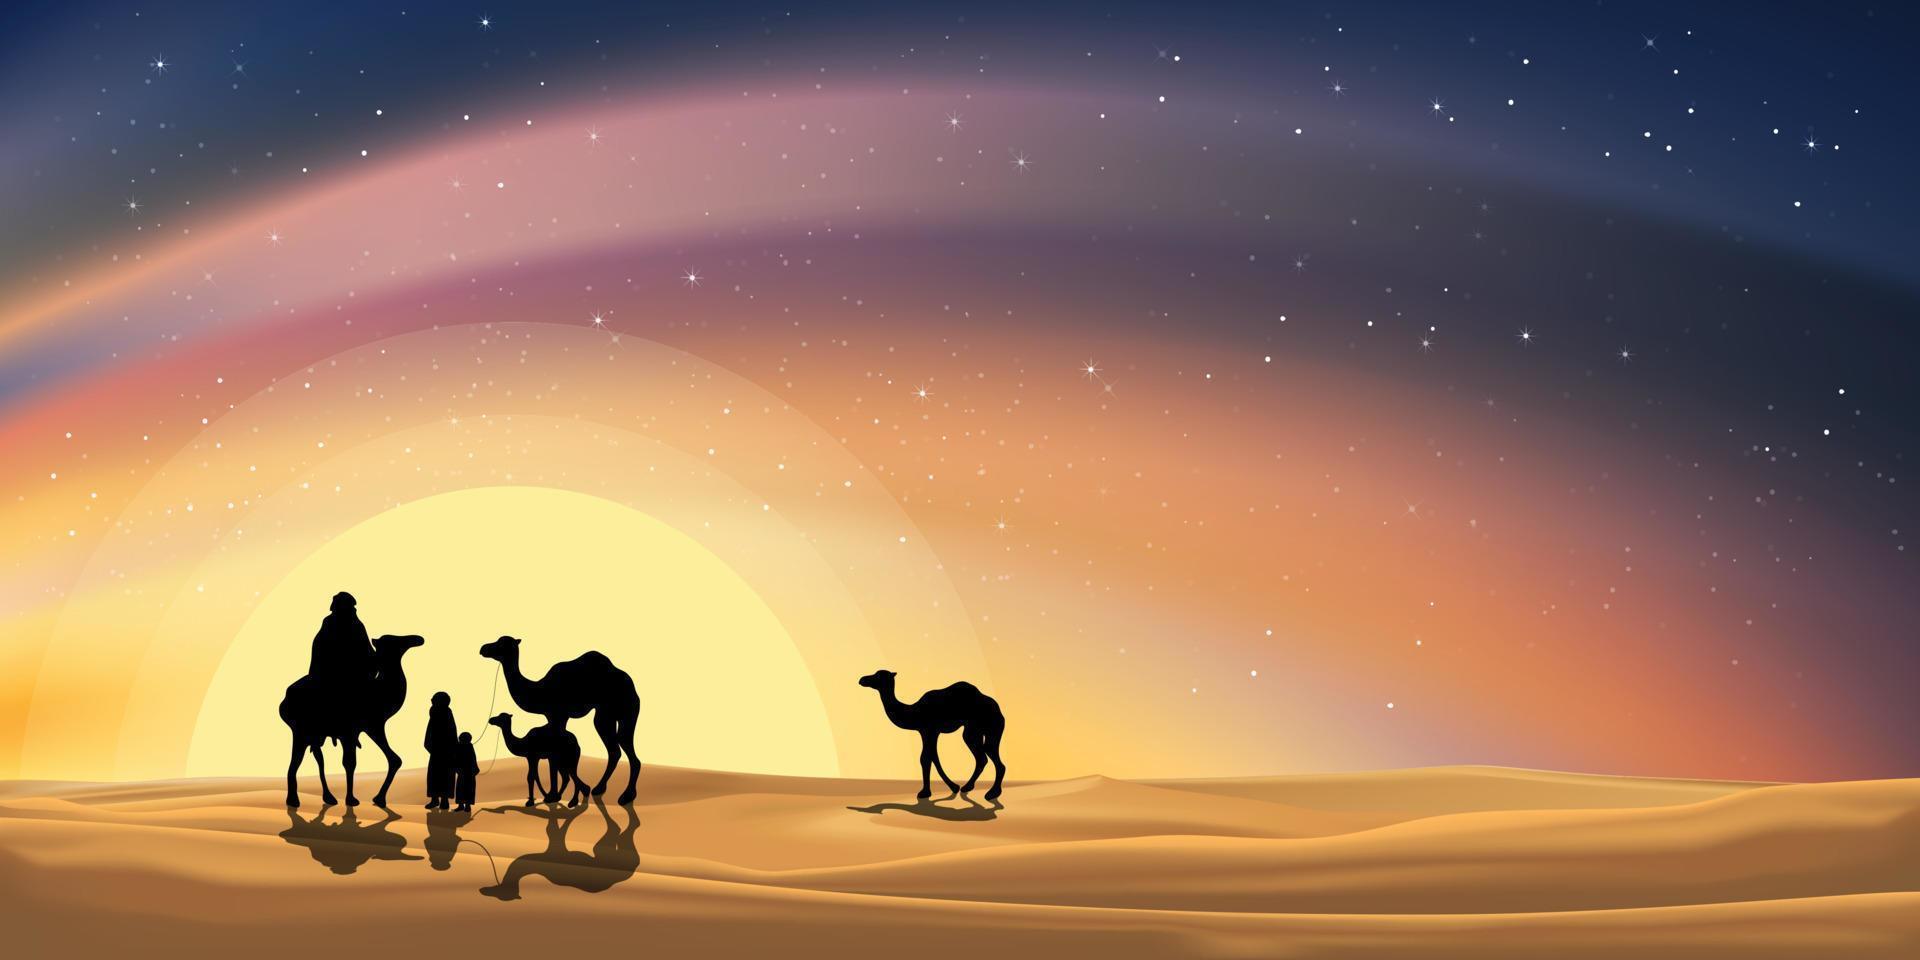 vettore paesaggio desertico con famiglia araba o roulotte musulmana in sella a cammelli che attraversano le dune di sabbia con il cielo stellato della via lattea con riflesso arancione della luce solare, concetto di ramadan kareem